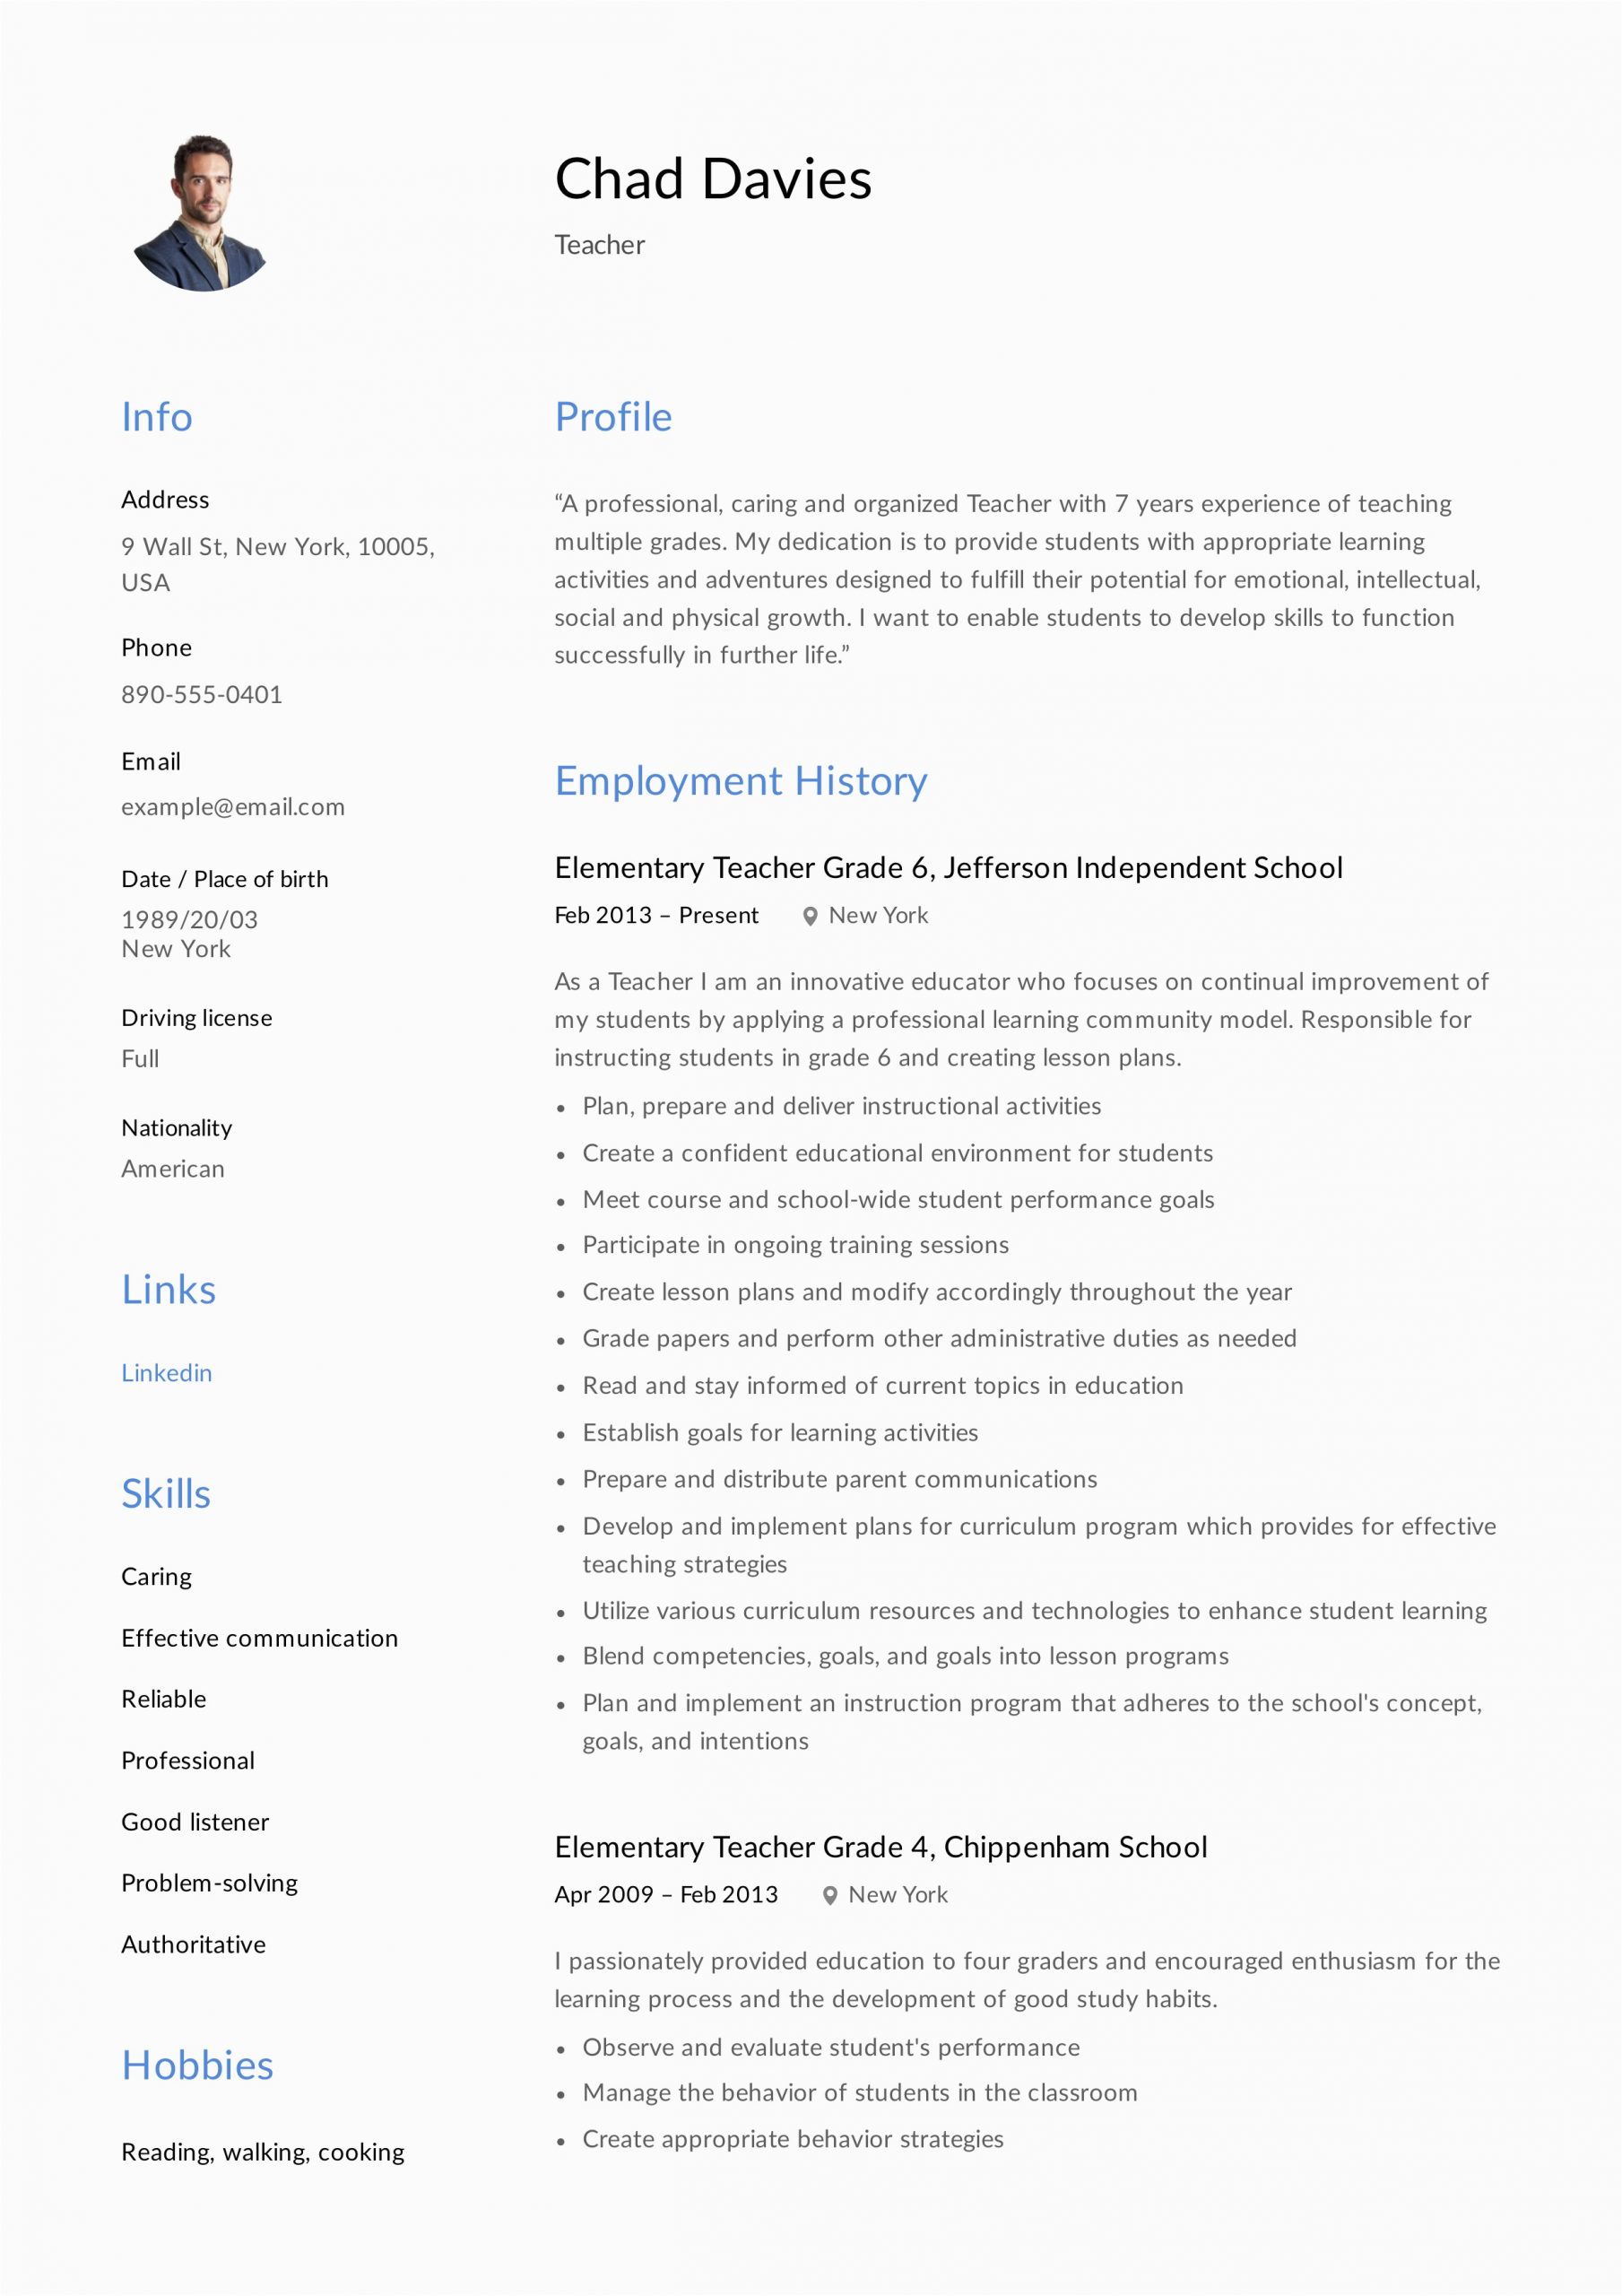 Sample Resume for A New Elementary School Teacher Teacher Resume & Writing Guide 12 Samples Pdf